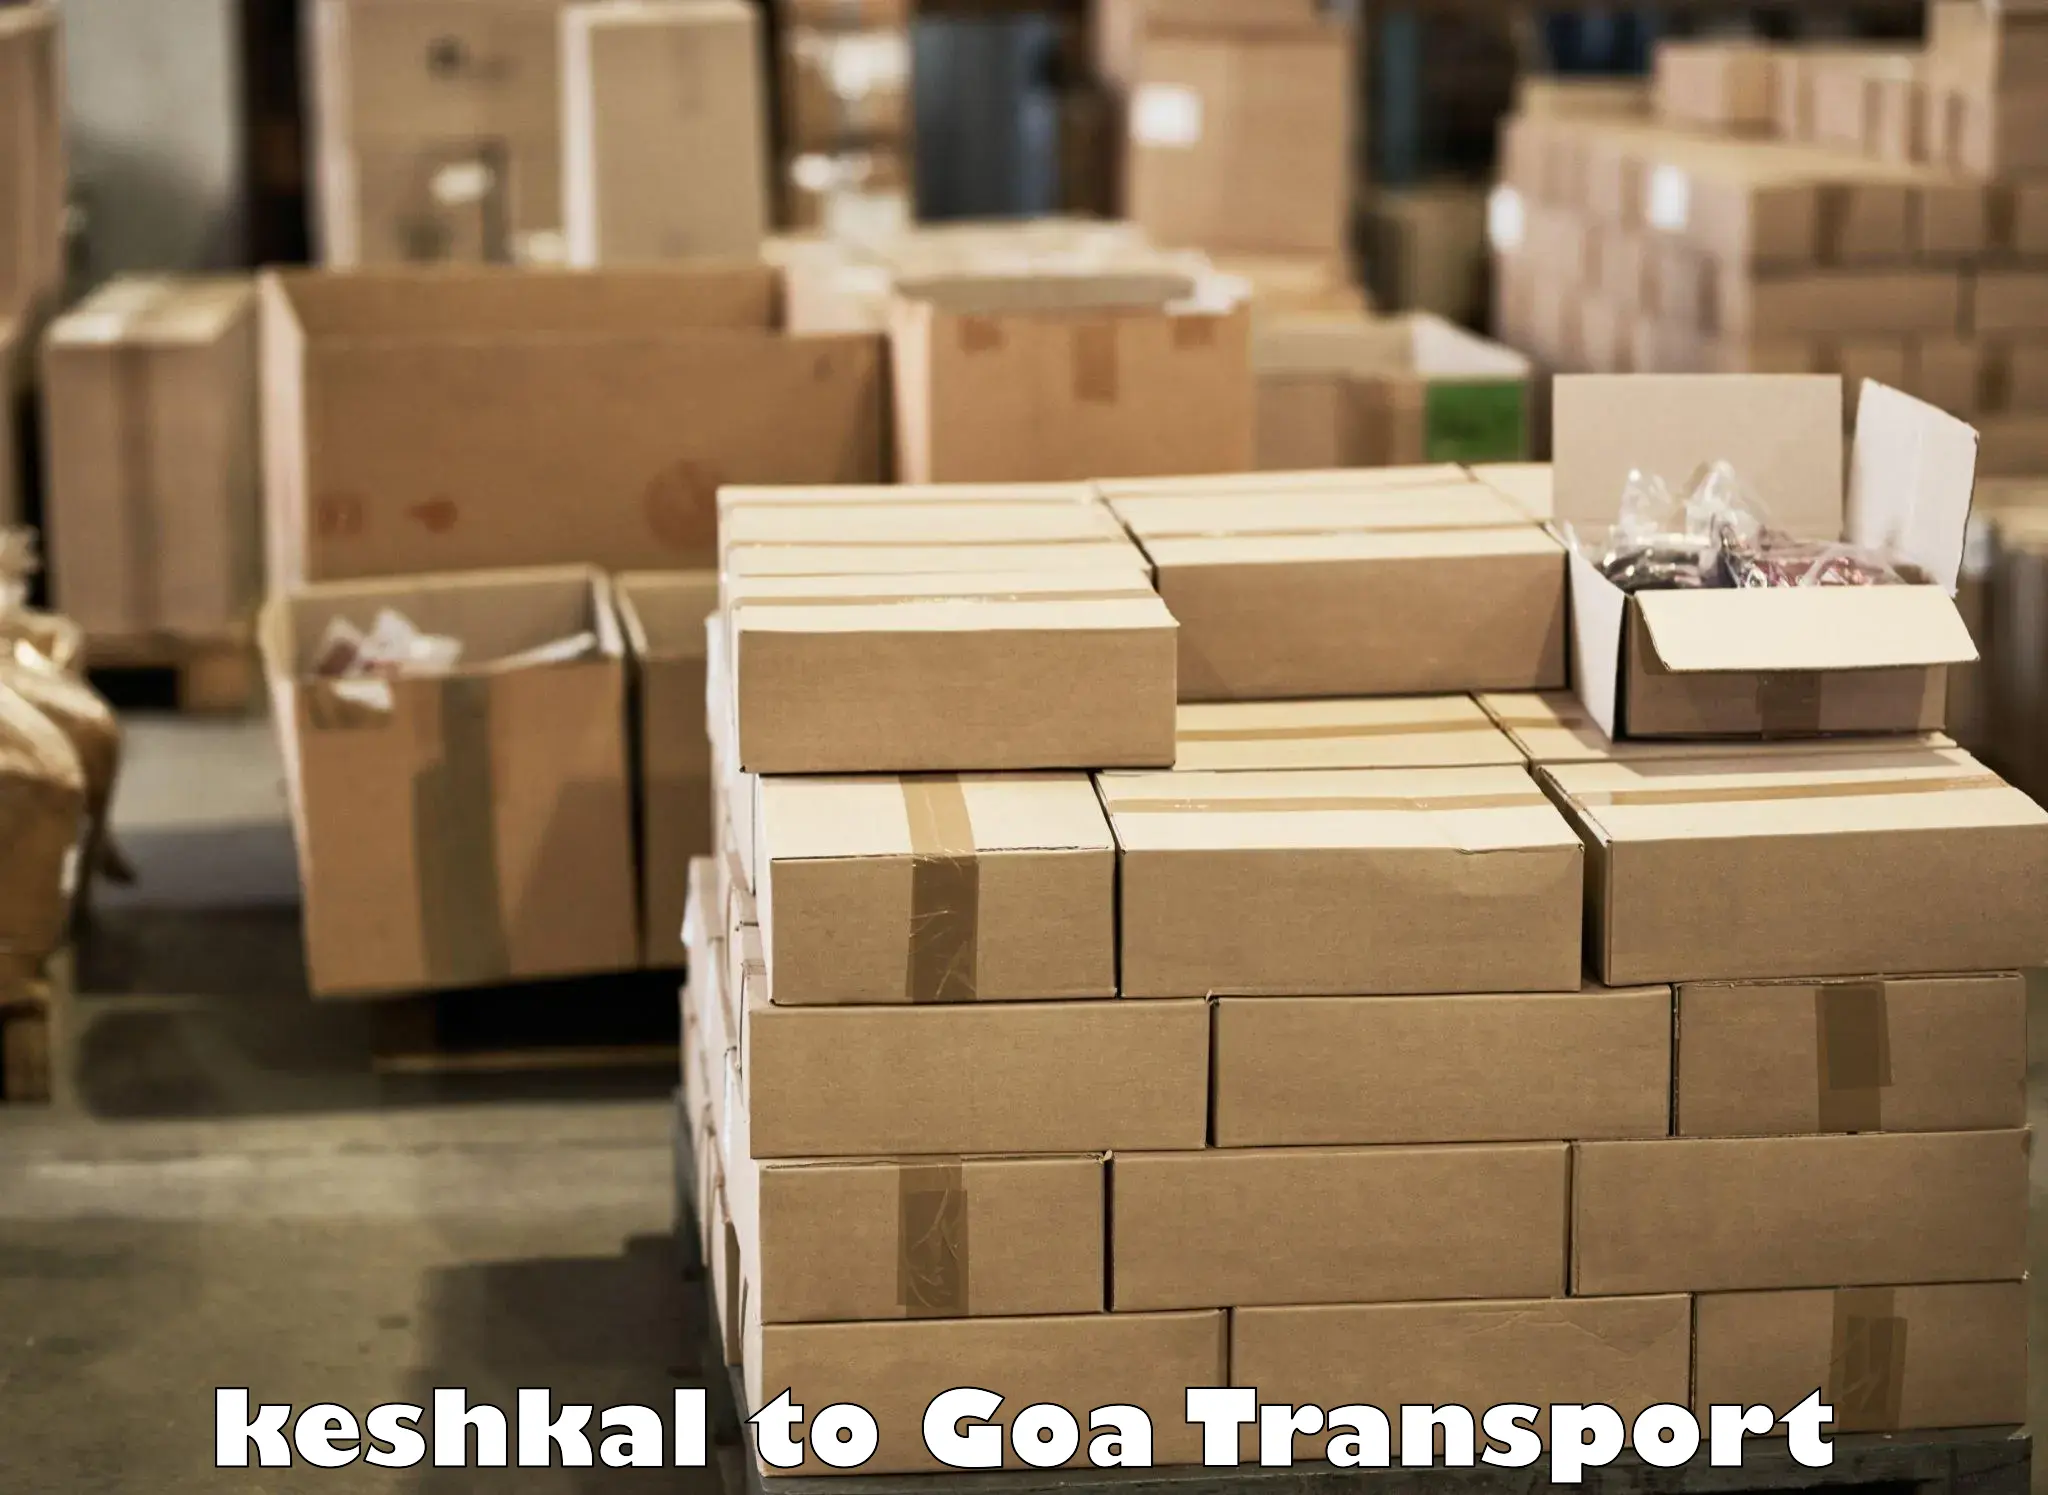 Door to door transport services in keshkal to Goa